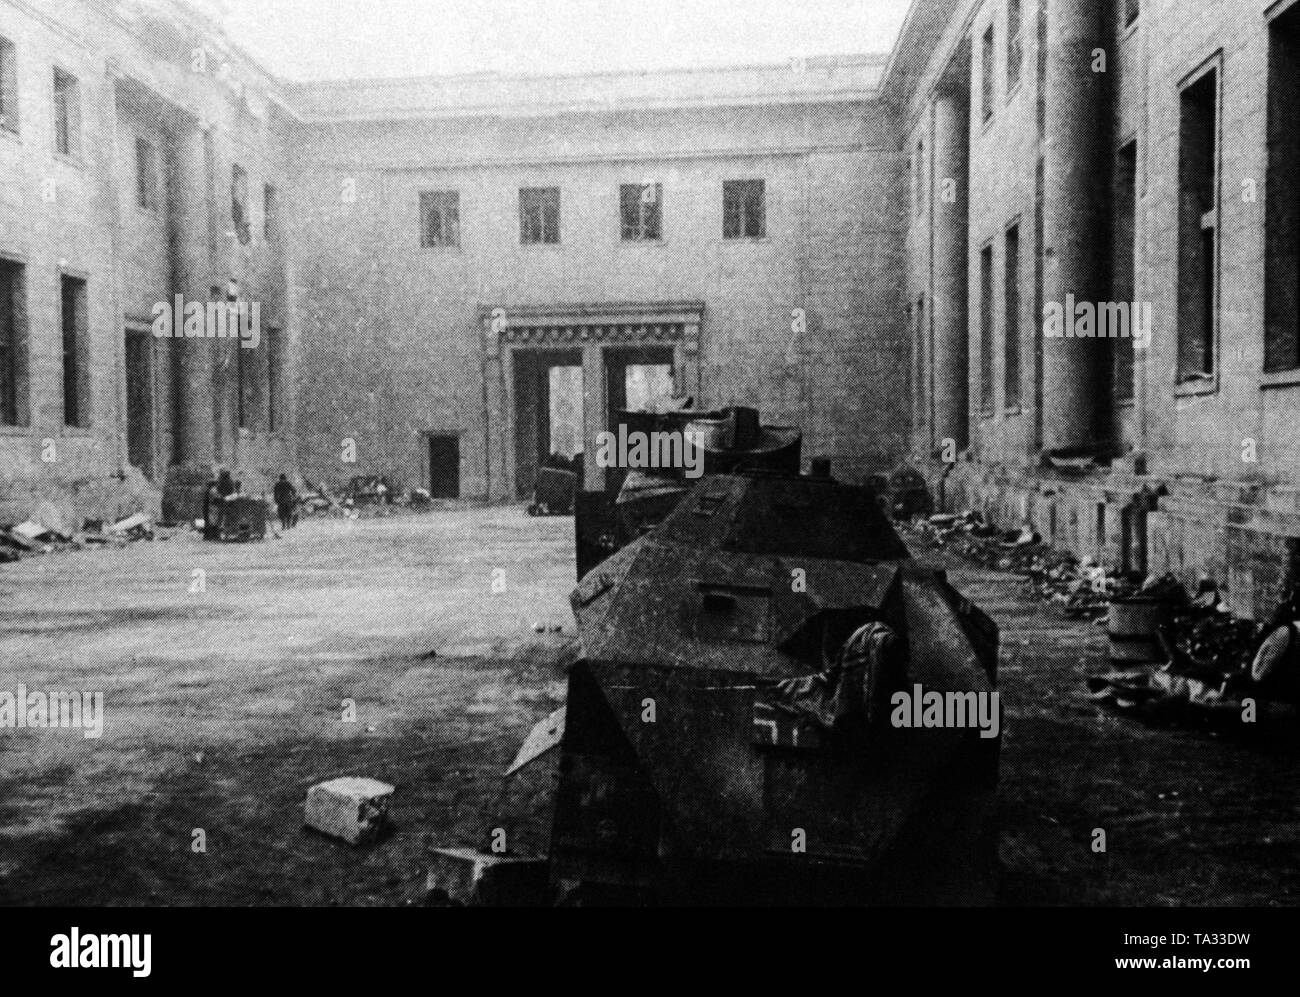 Photo de la cour principale de la Chancellerie du Reich détruit immédiatement après sa capture par les troupes soviétiques. Au premier plan, l'épave d'un véhicule blindé allemand abattu, dans l'arrière-plan le grand portail à Wilhelmstrasse. Banque D'Images